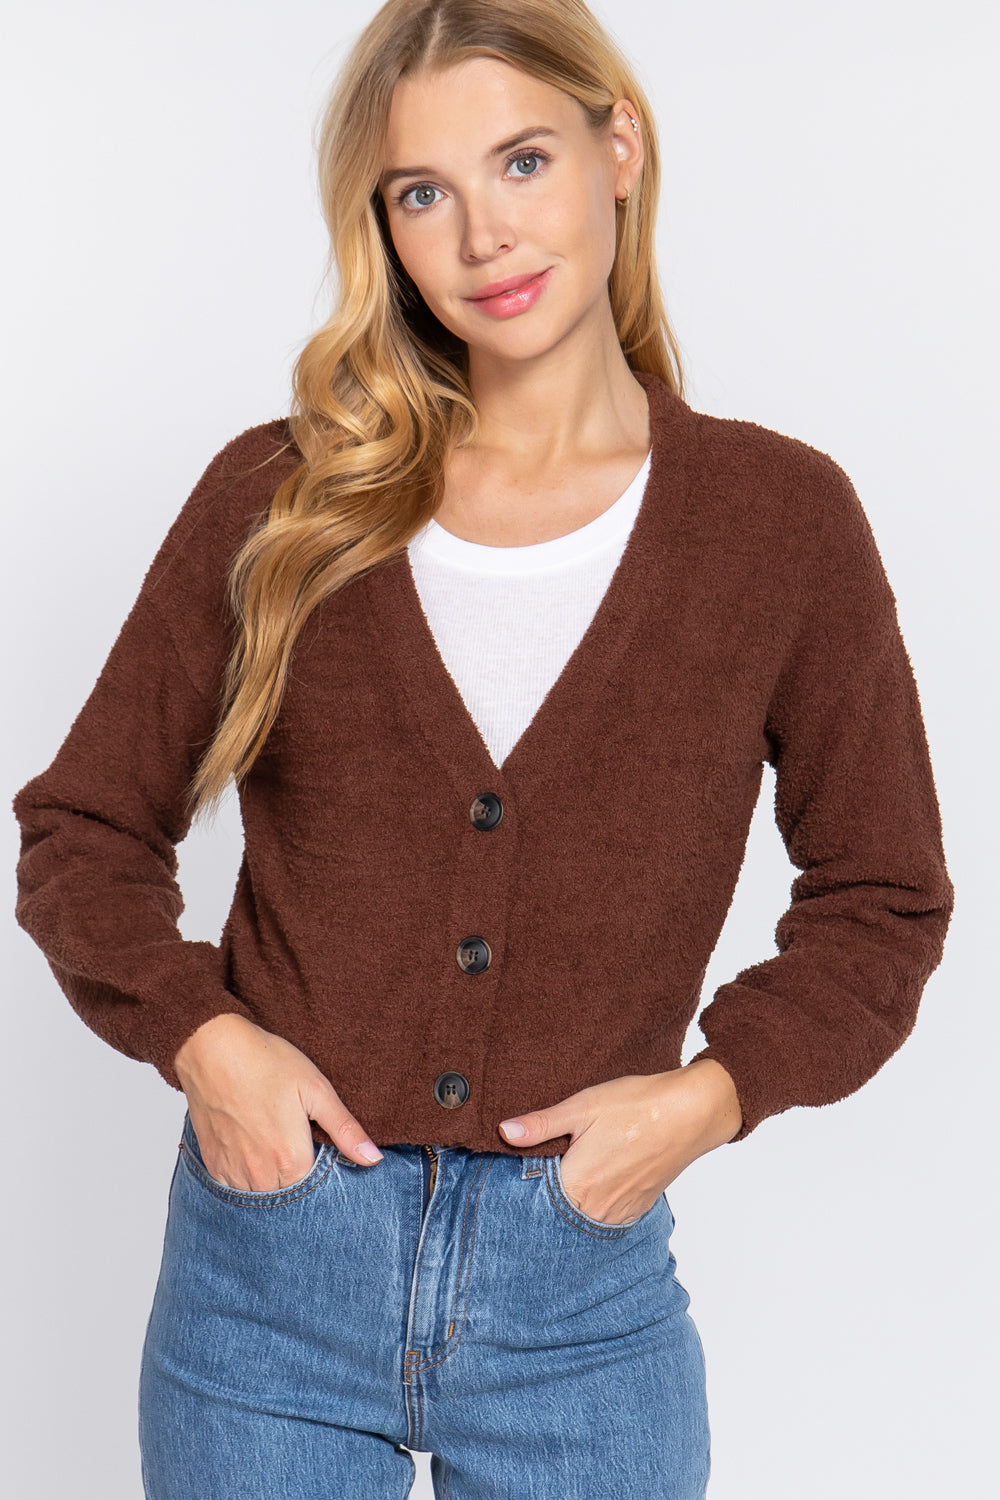 Women's Long Slv V-neck Sweater Cardigan